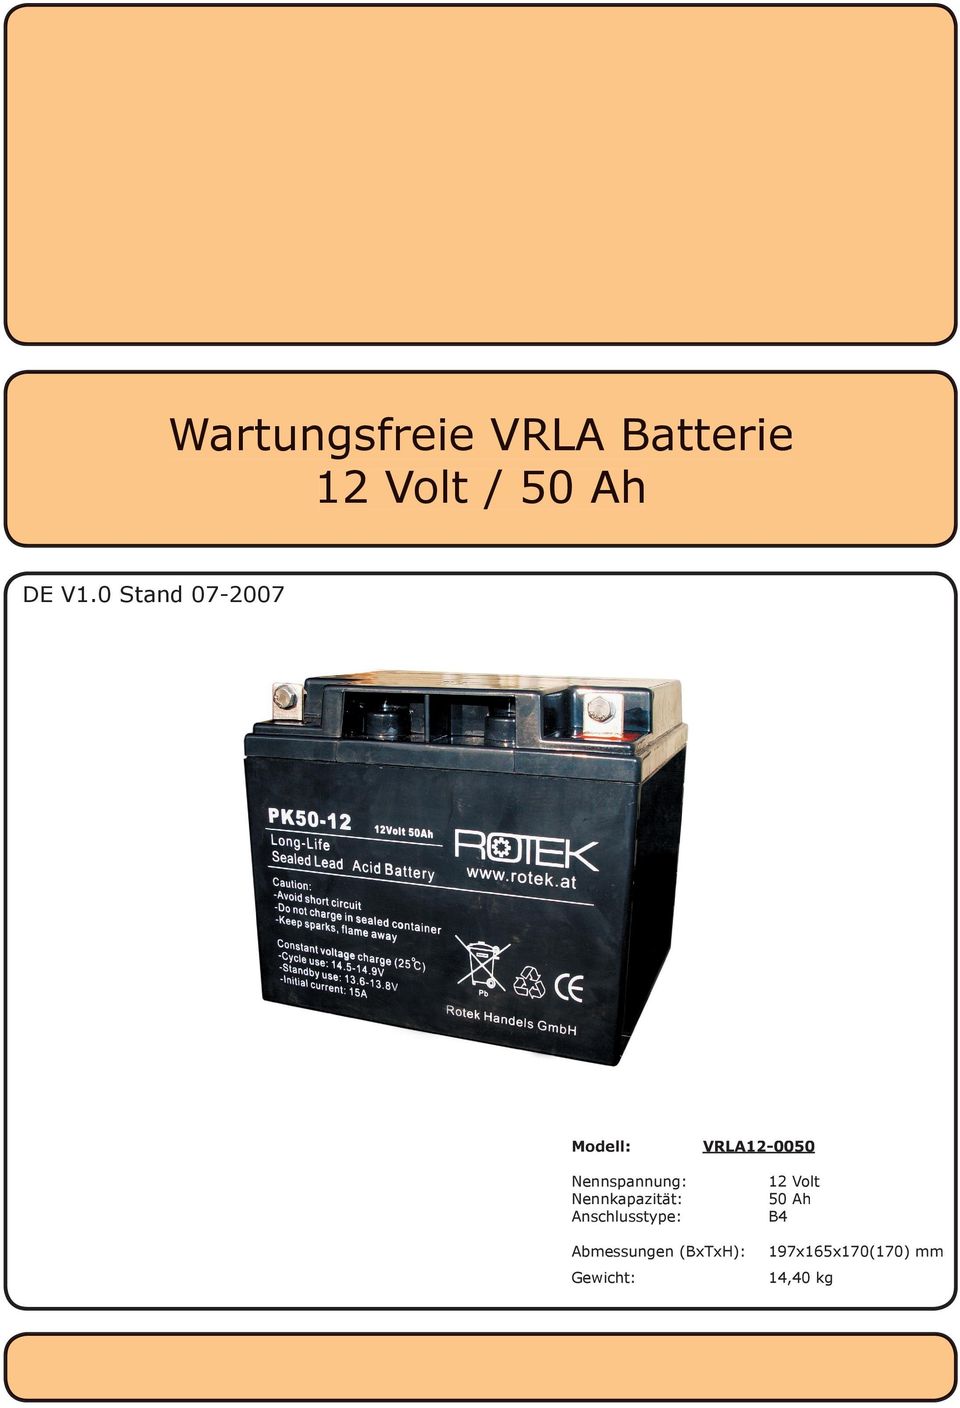 Nennkapazität: Anschlusstype: VRLA12-0050 12 Volt